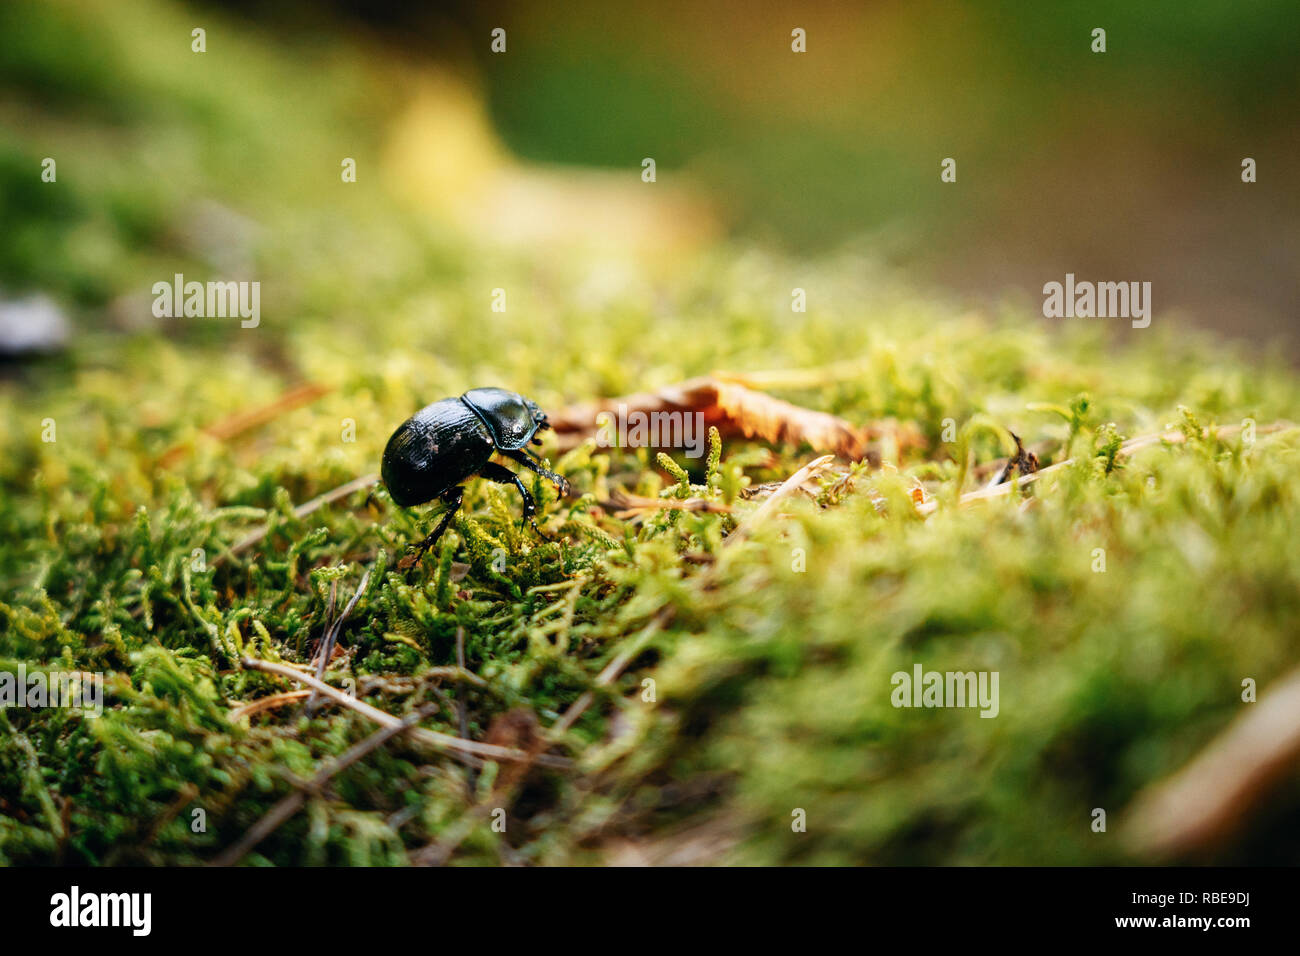 Un grande nero dor beetle seduta sul verde muschio e foglie Foto Stock